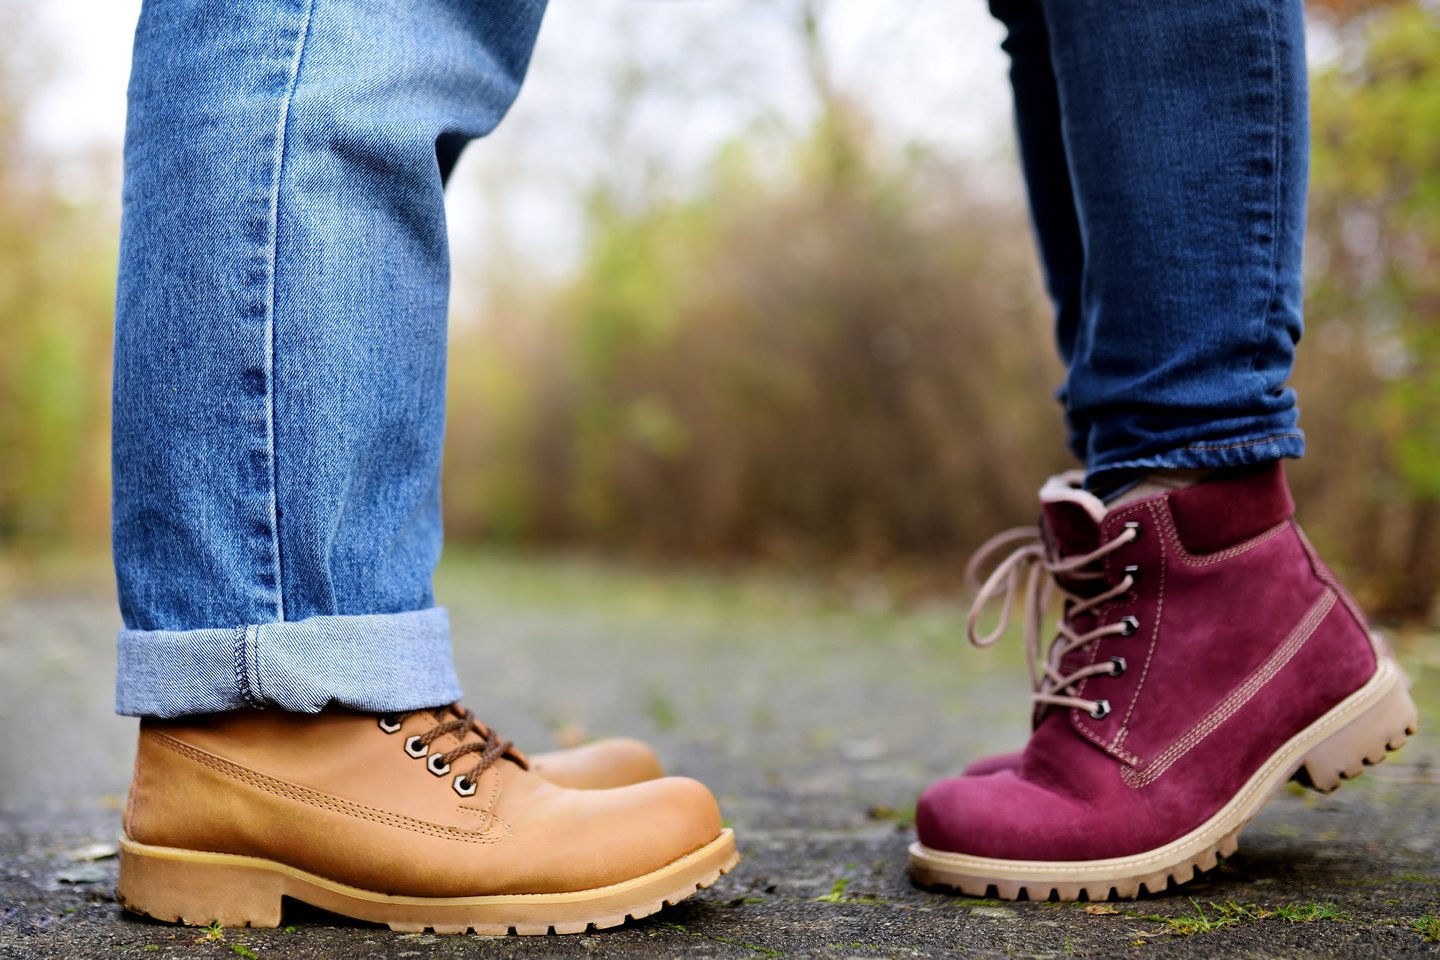  Mėlyni džinsai ir tamsiai rudi batai yra puiki kombinacija žiemą, o pavasarį ir vasarą karaliauja smėlio spalva. <br> 123rf nuotr.